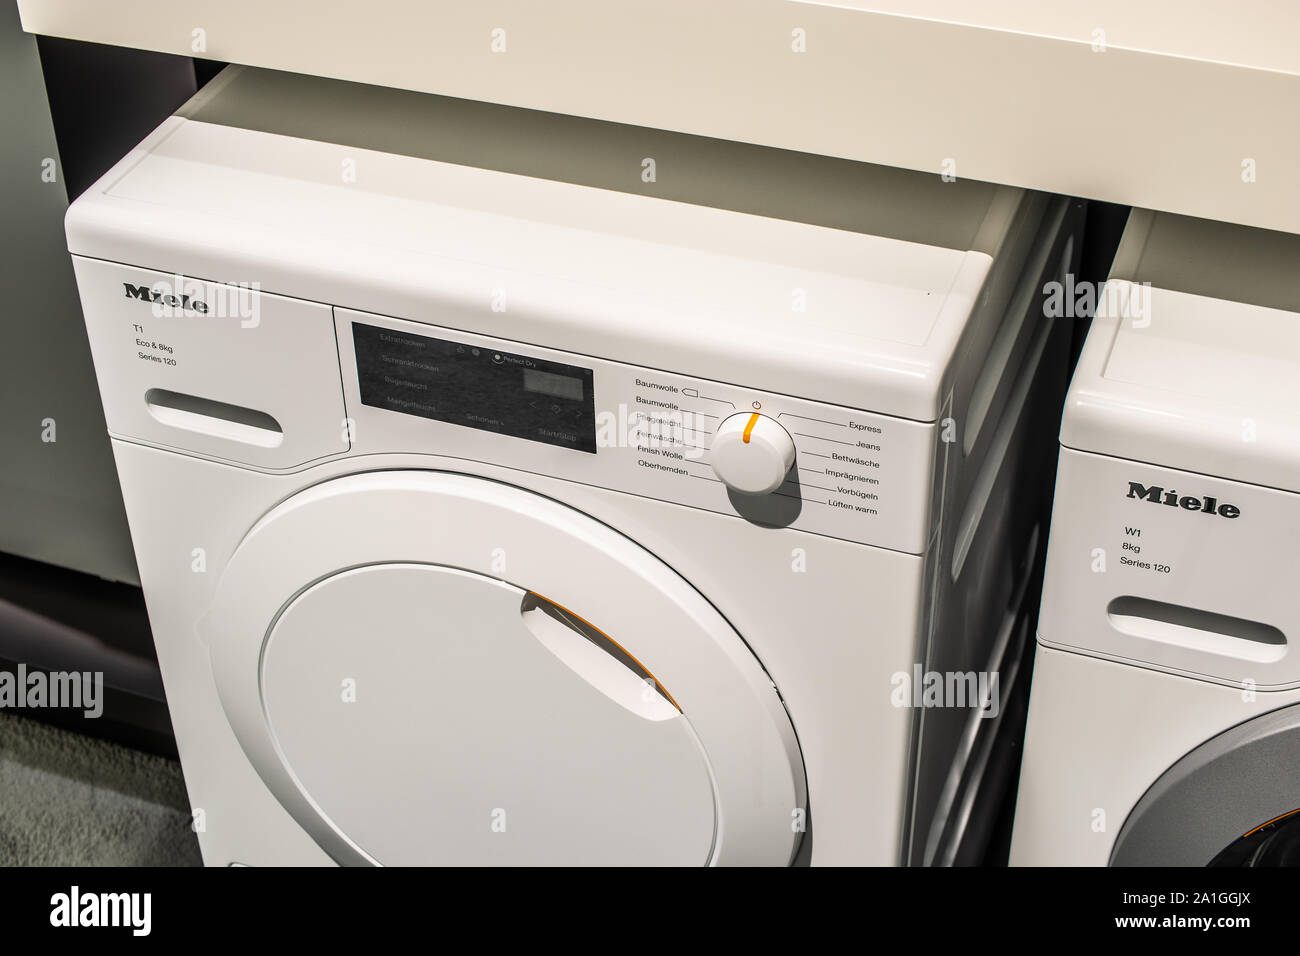 Berlin, Allemagne, nov 2019, les machines à laver Miele sèche-linge Miele  sur l'affichage, d'exposition, Pavillon des expositions IFA 2019  Innovations mondiales montrent Photo Stock - Alamy